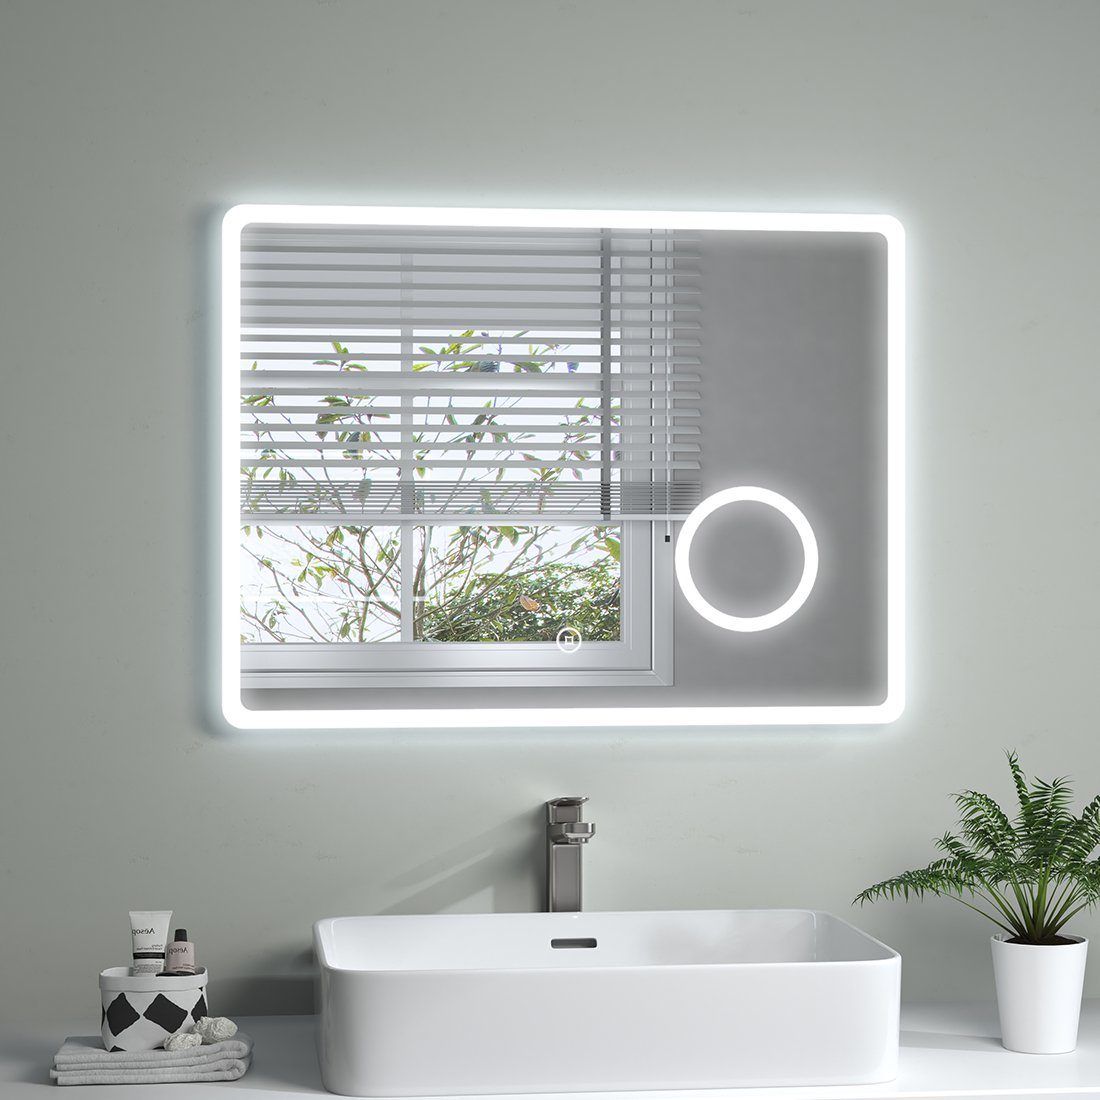 S'AFIELINA Badspiegel LED Badezimmerspiegel Kosmetikspiegel mit Beleuchtung Rasierspiegel, Touchschalter,Beschlagfrei,3-fach Vergrößerung,Kaltweiß 6500K